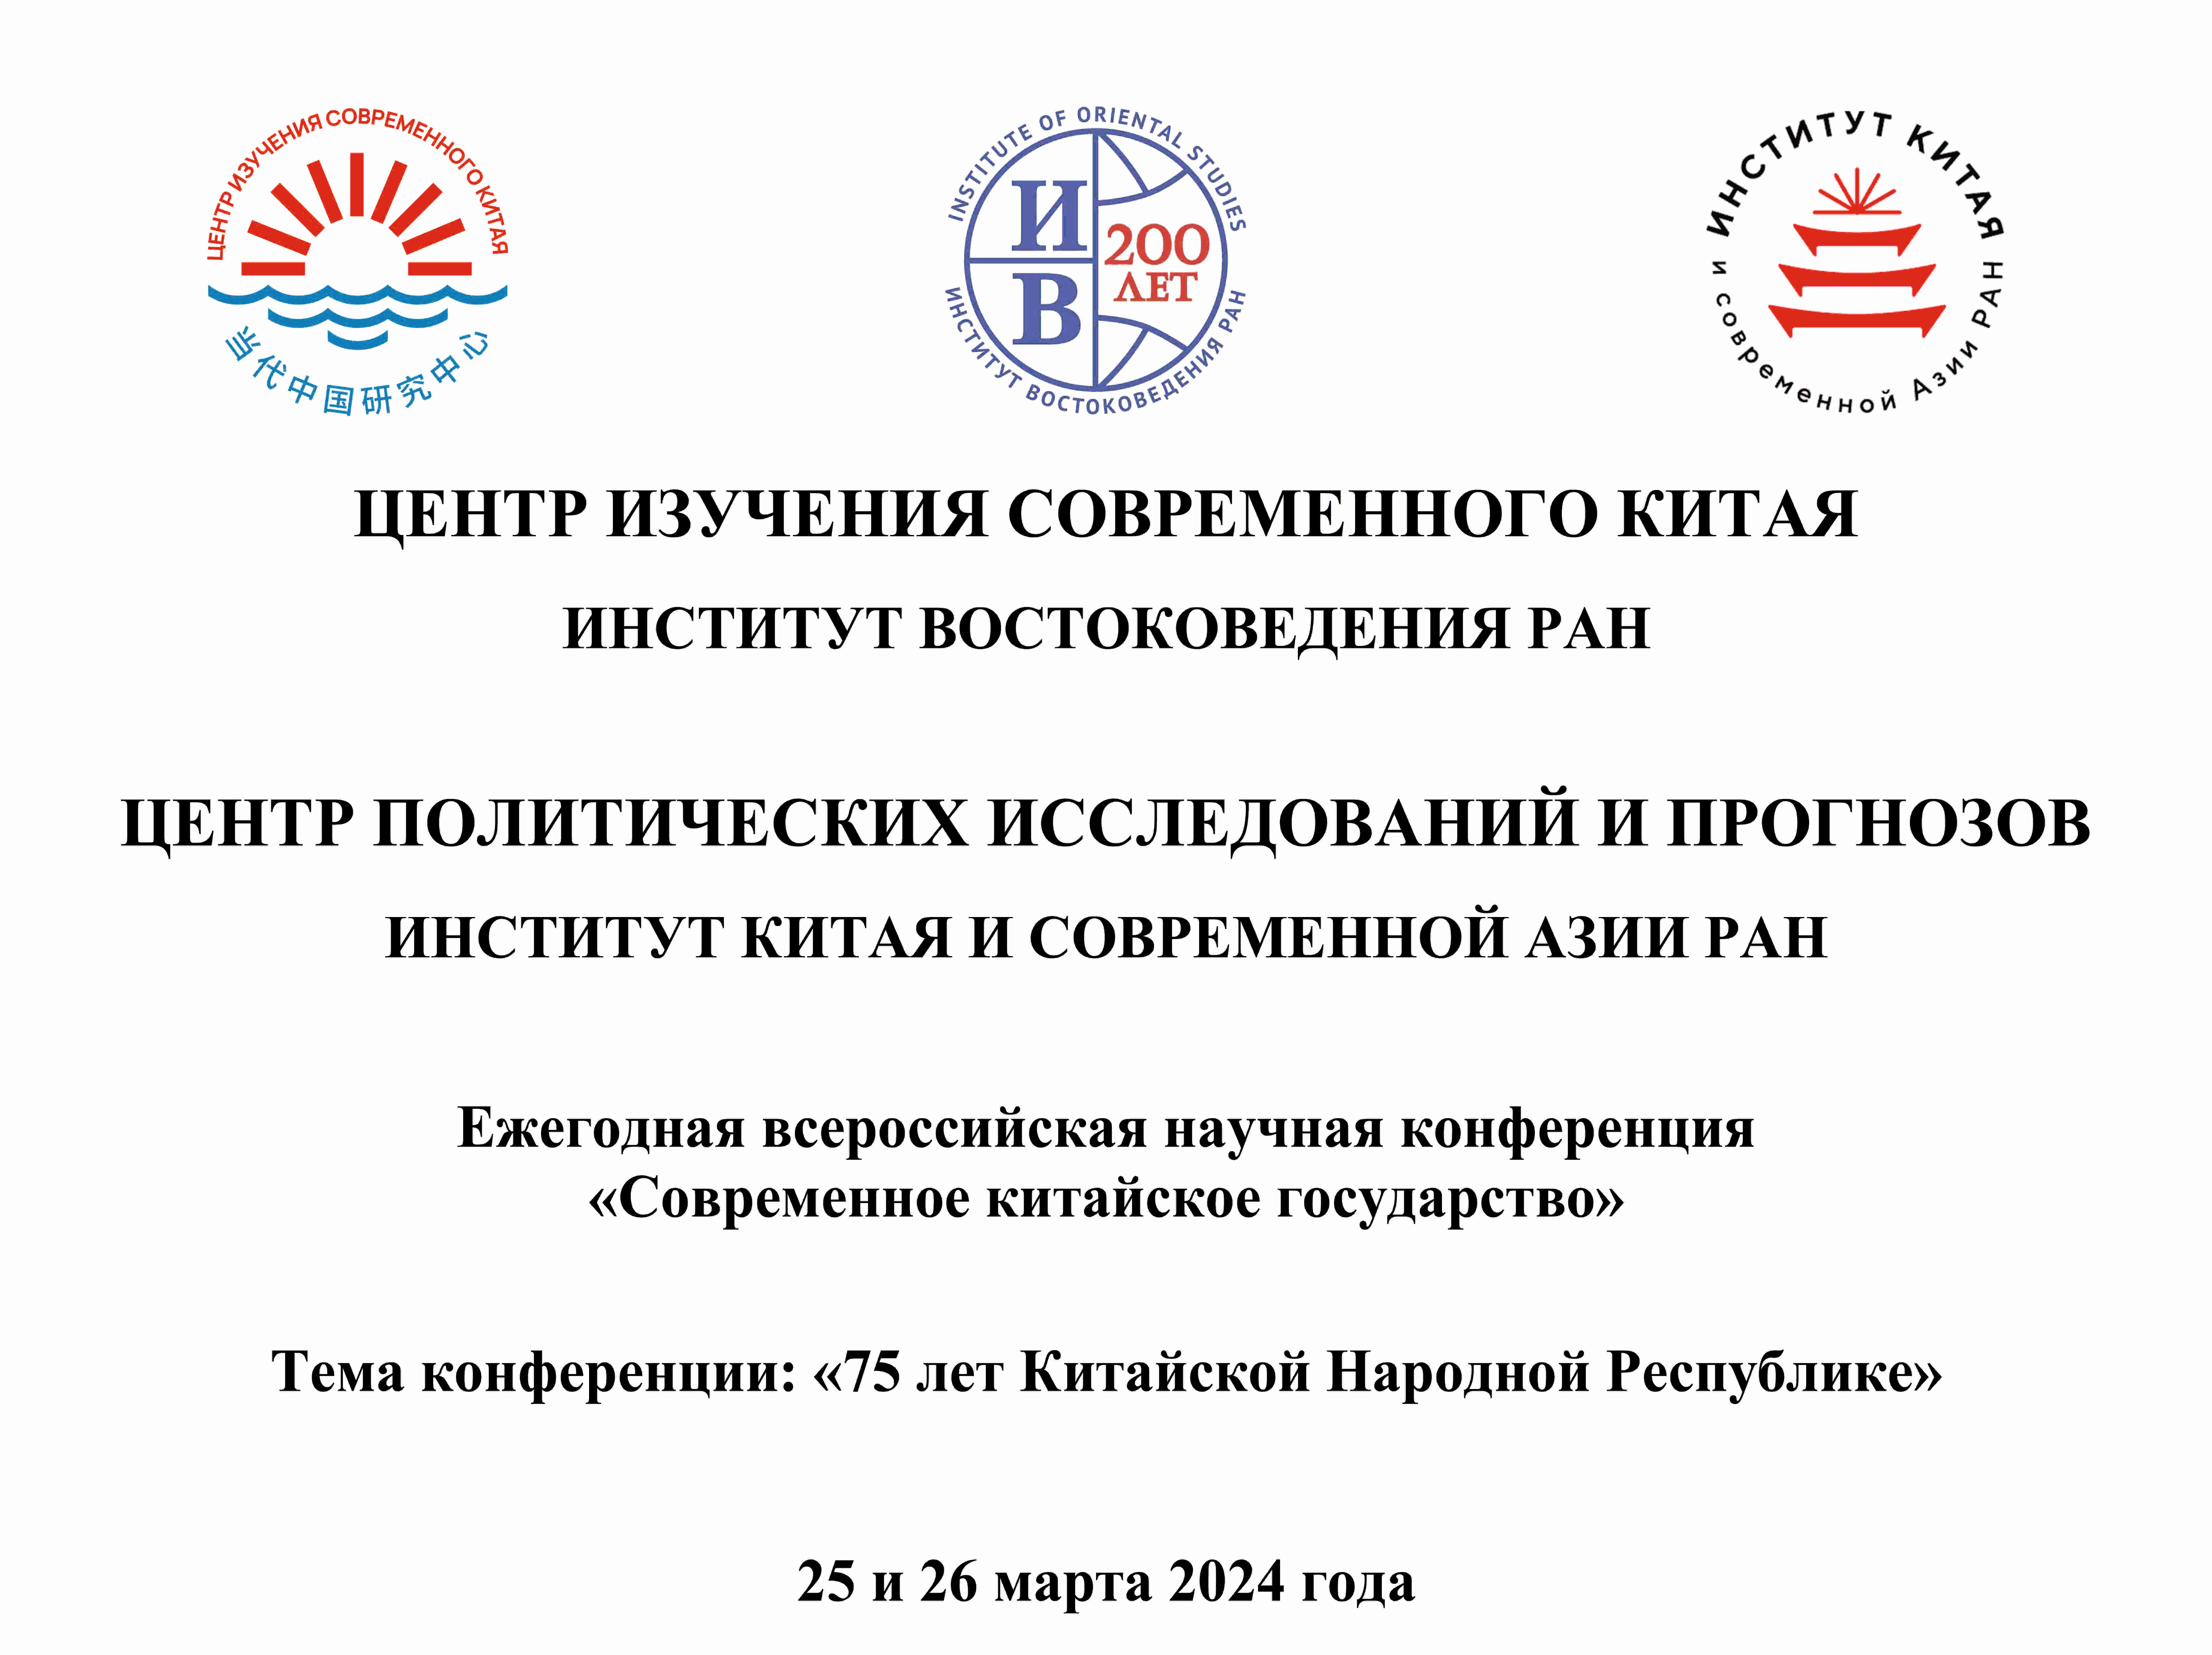 Ежегодная всероссийская научная конференция «Современное китайское государство»